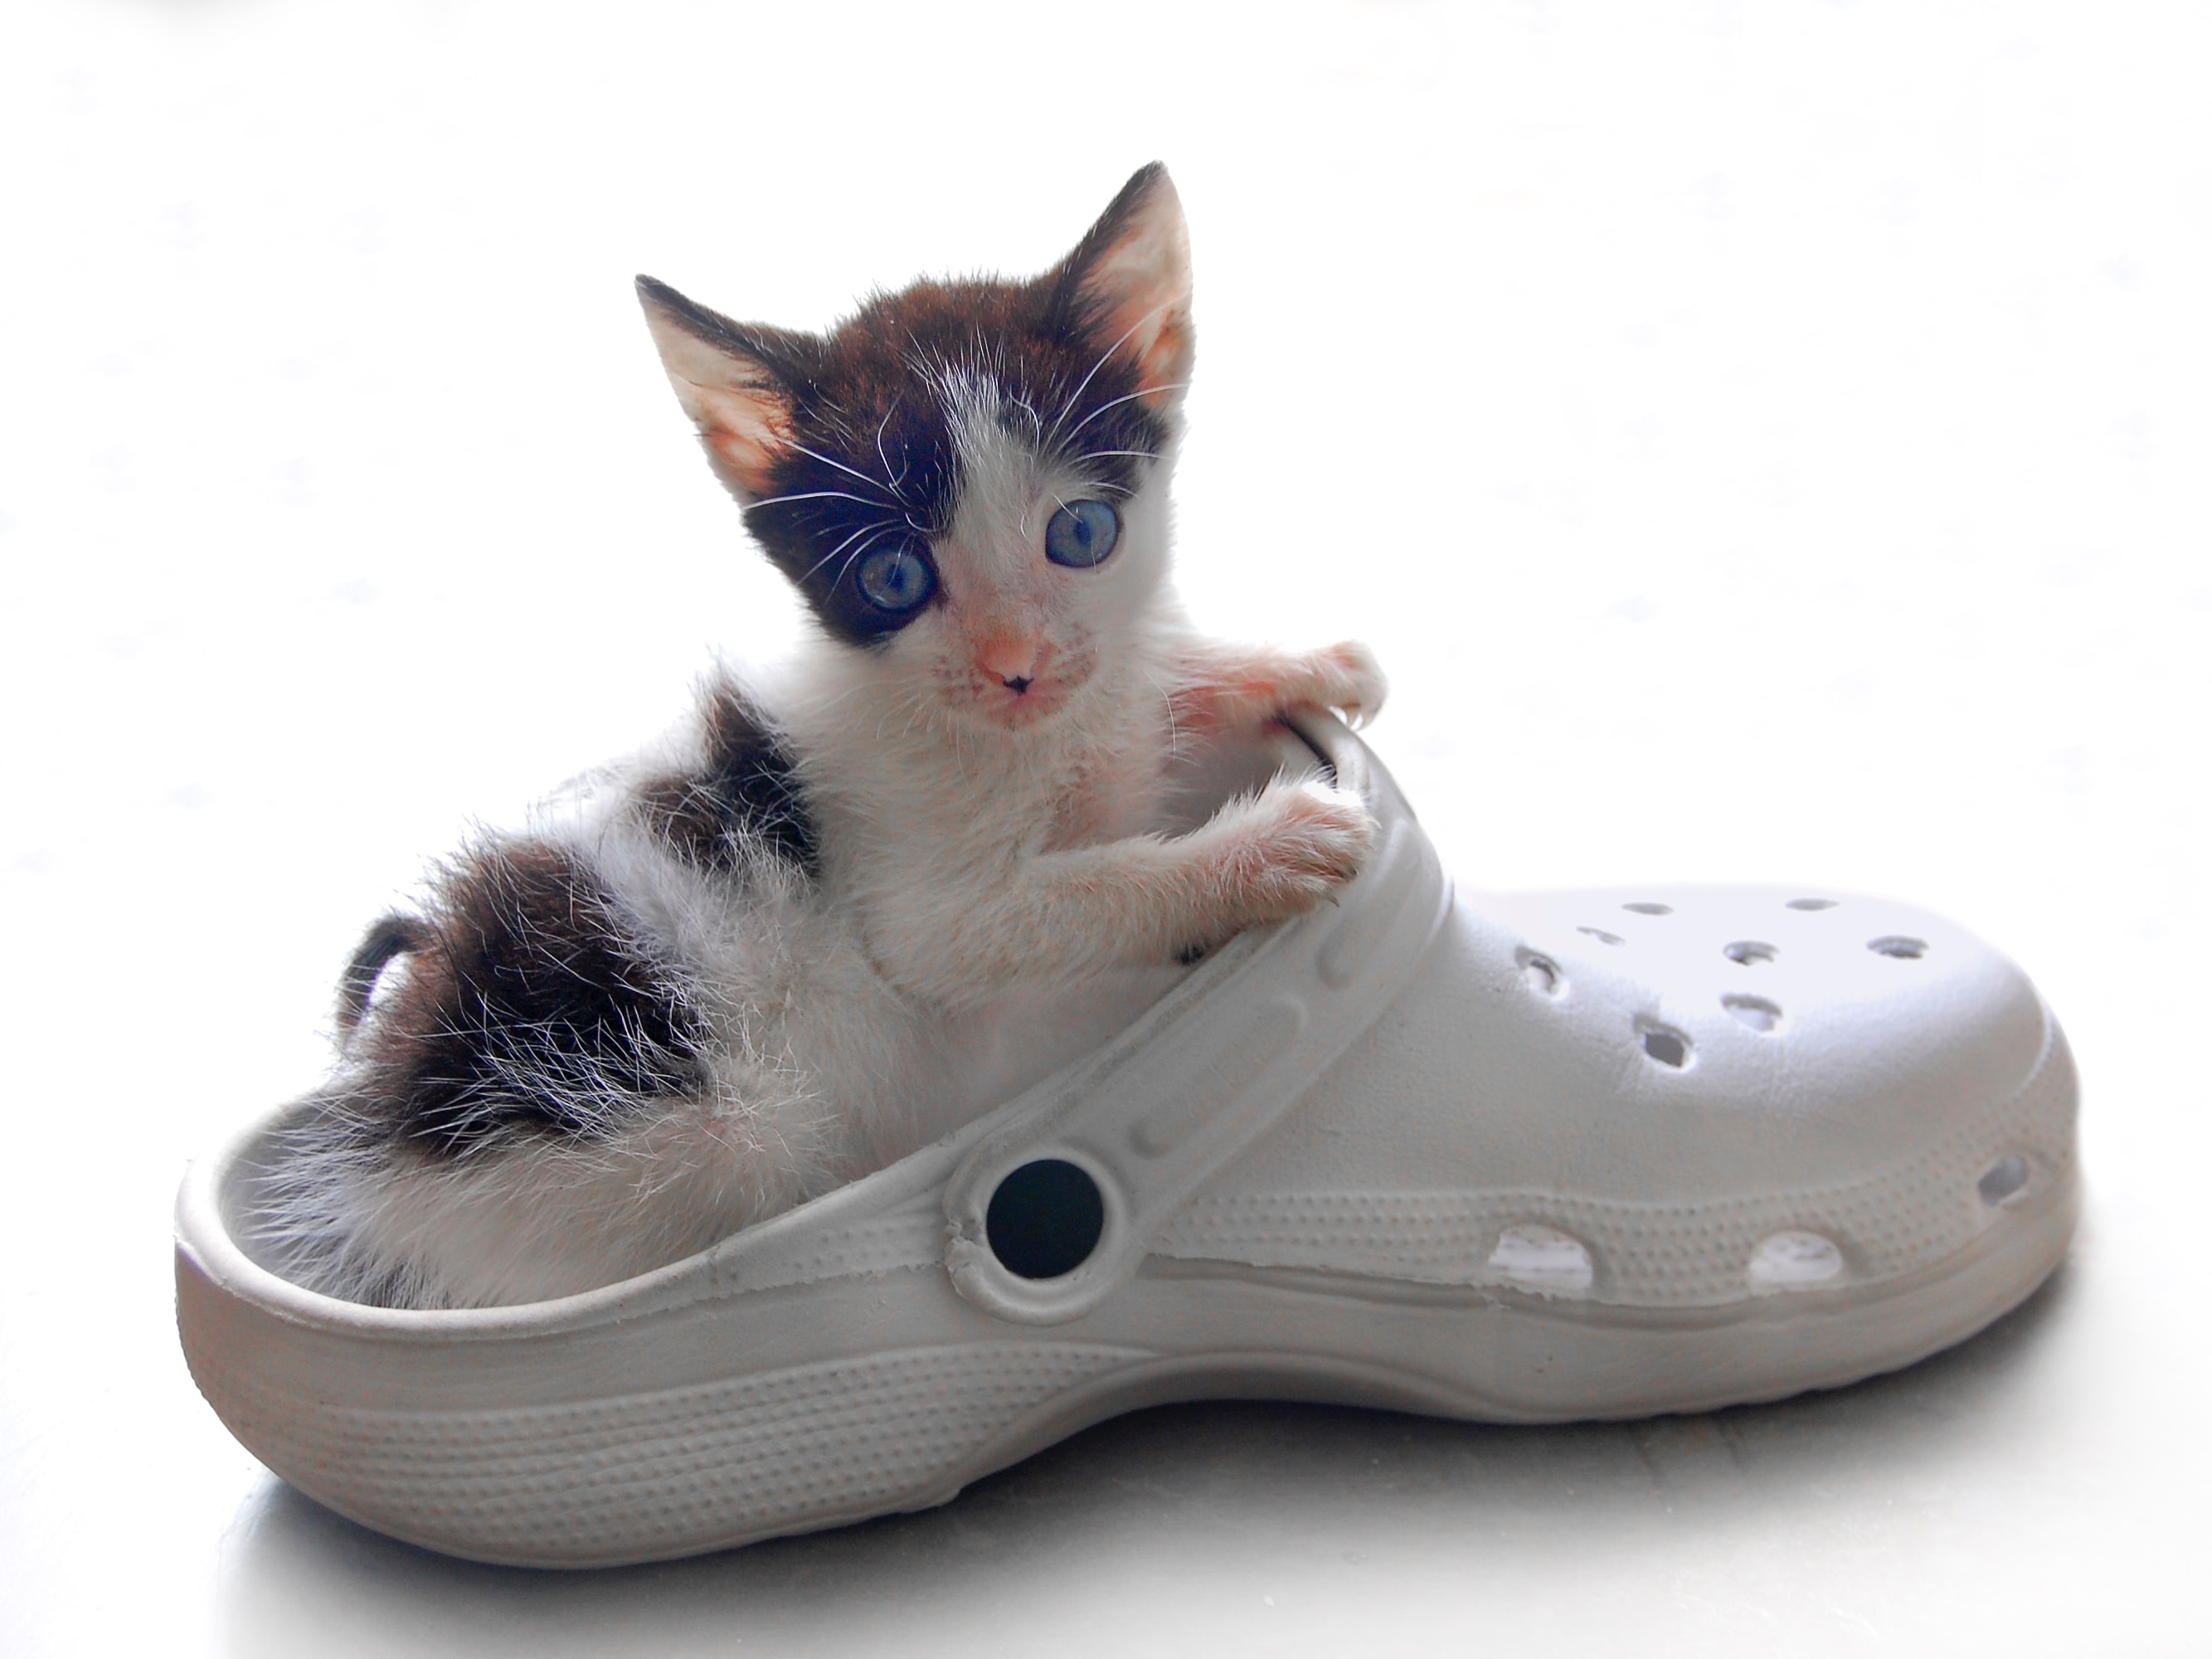 A kitten in a shoe